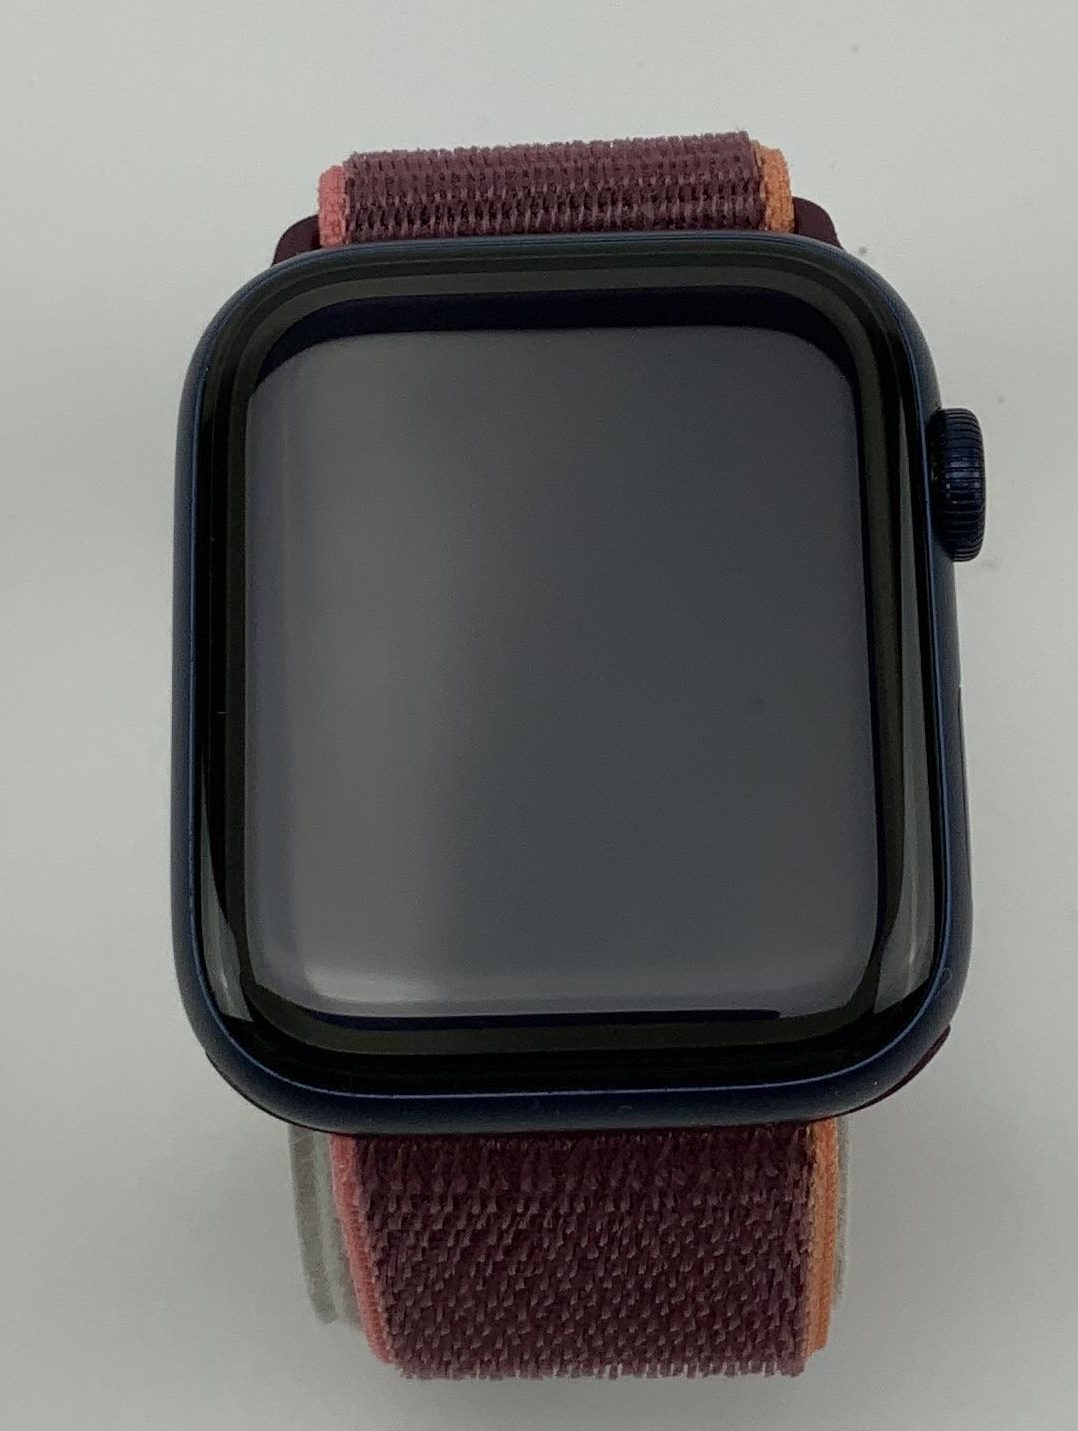 Watch Series 6 Aluminum Cellular (44mm), Blue, imagen 1